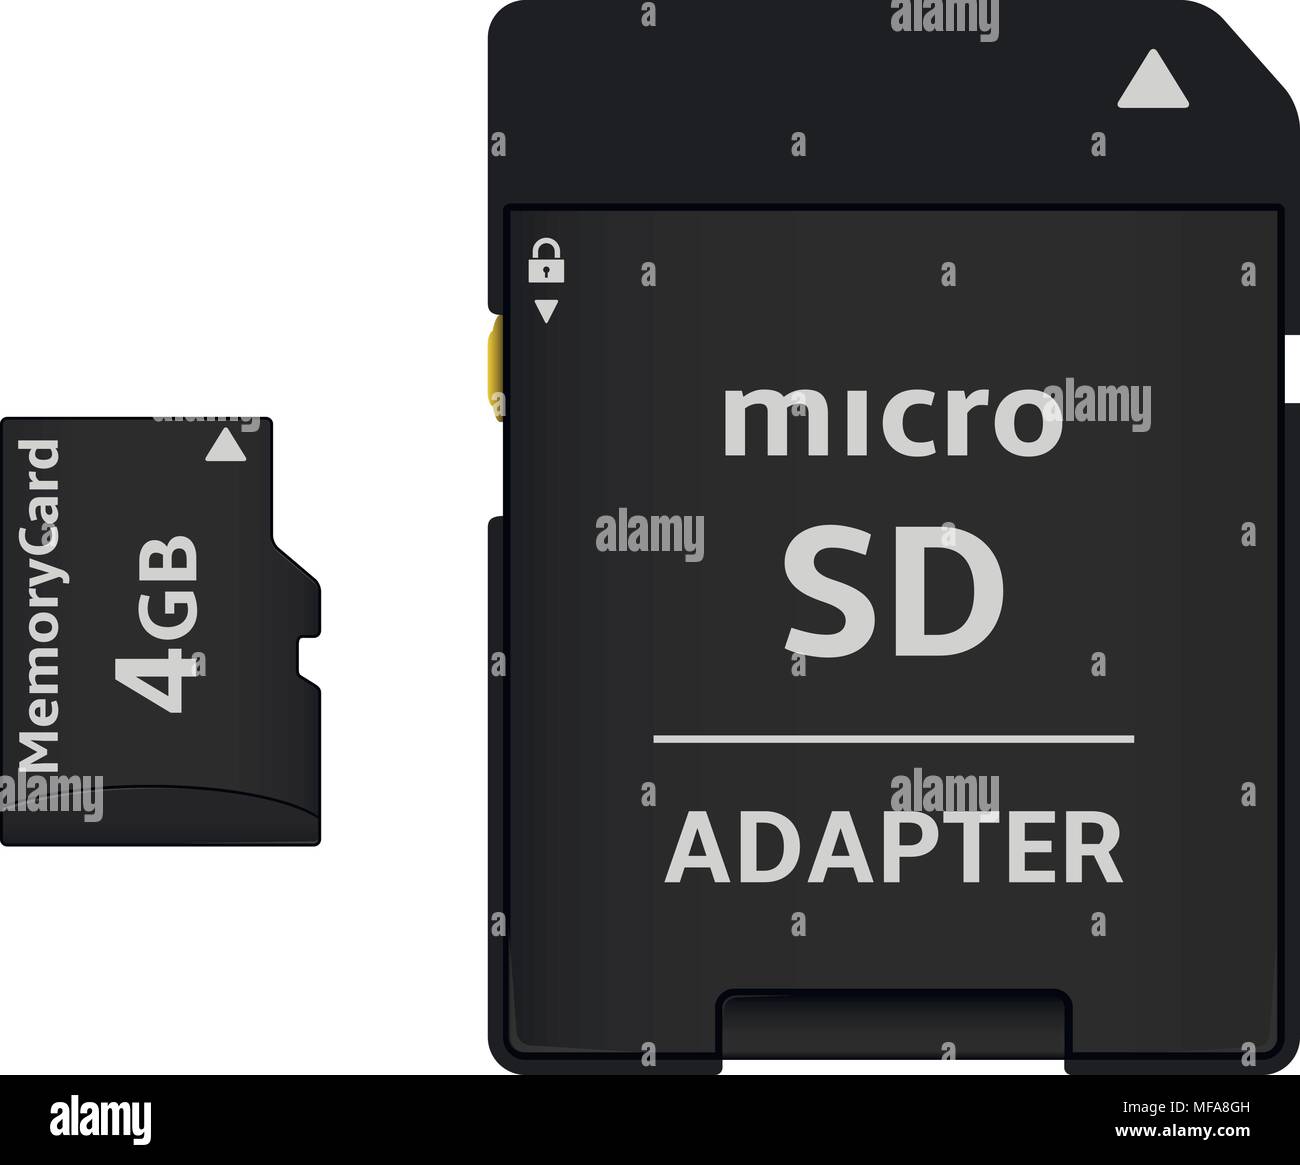 Scheda Micro SD e adattatore. Isolato su sfondo bianco. Illustrazione Vettoriale. Illustrazione Vettoriale